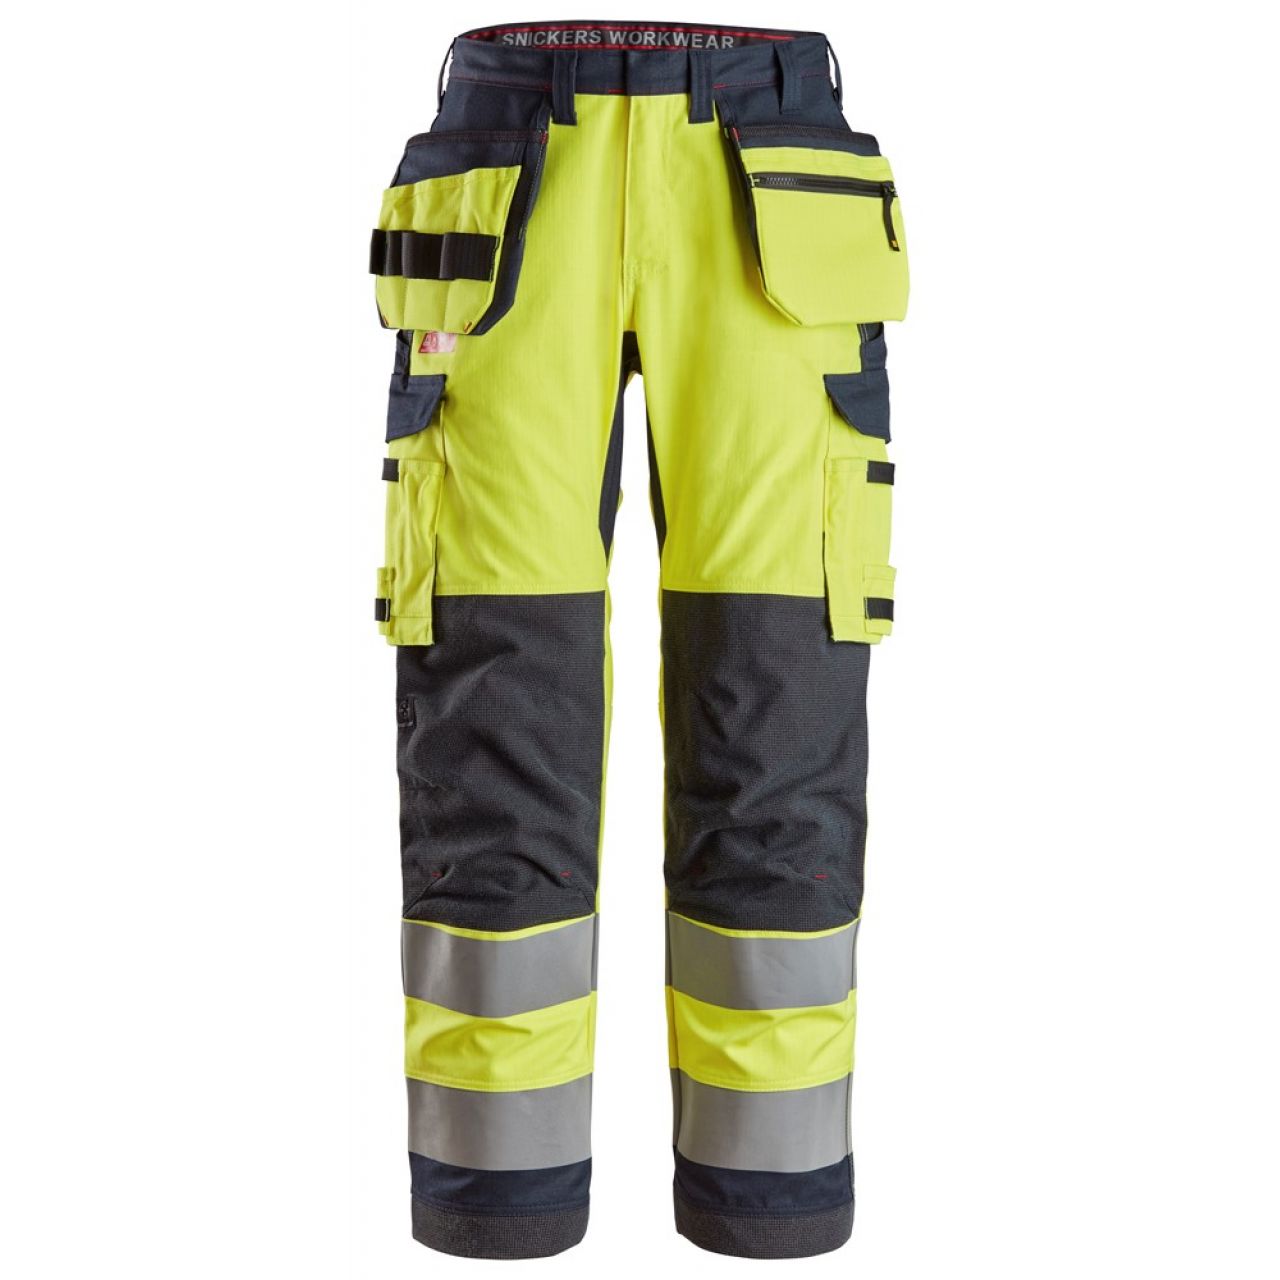 6261 Pantalones largos de trabajo de alta visibilidad clase 2 con bolsillos flotantes simétricos ProtecWork amarillo-azul marino talla 146